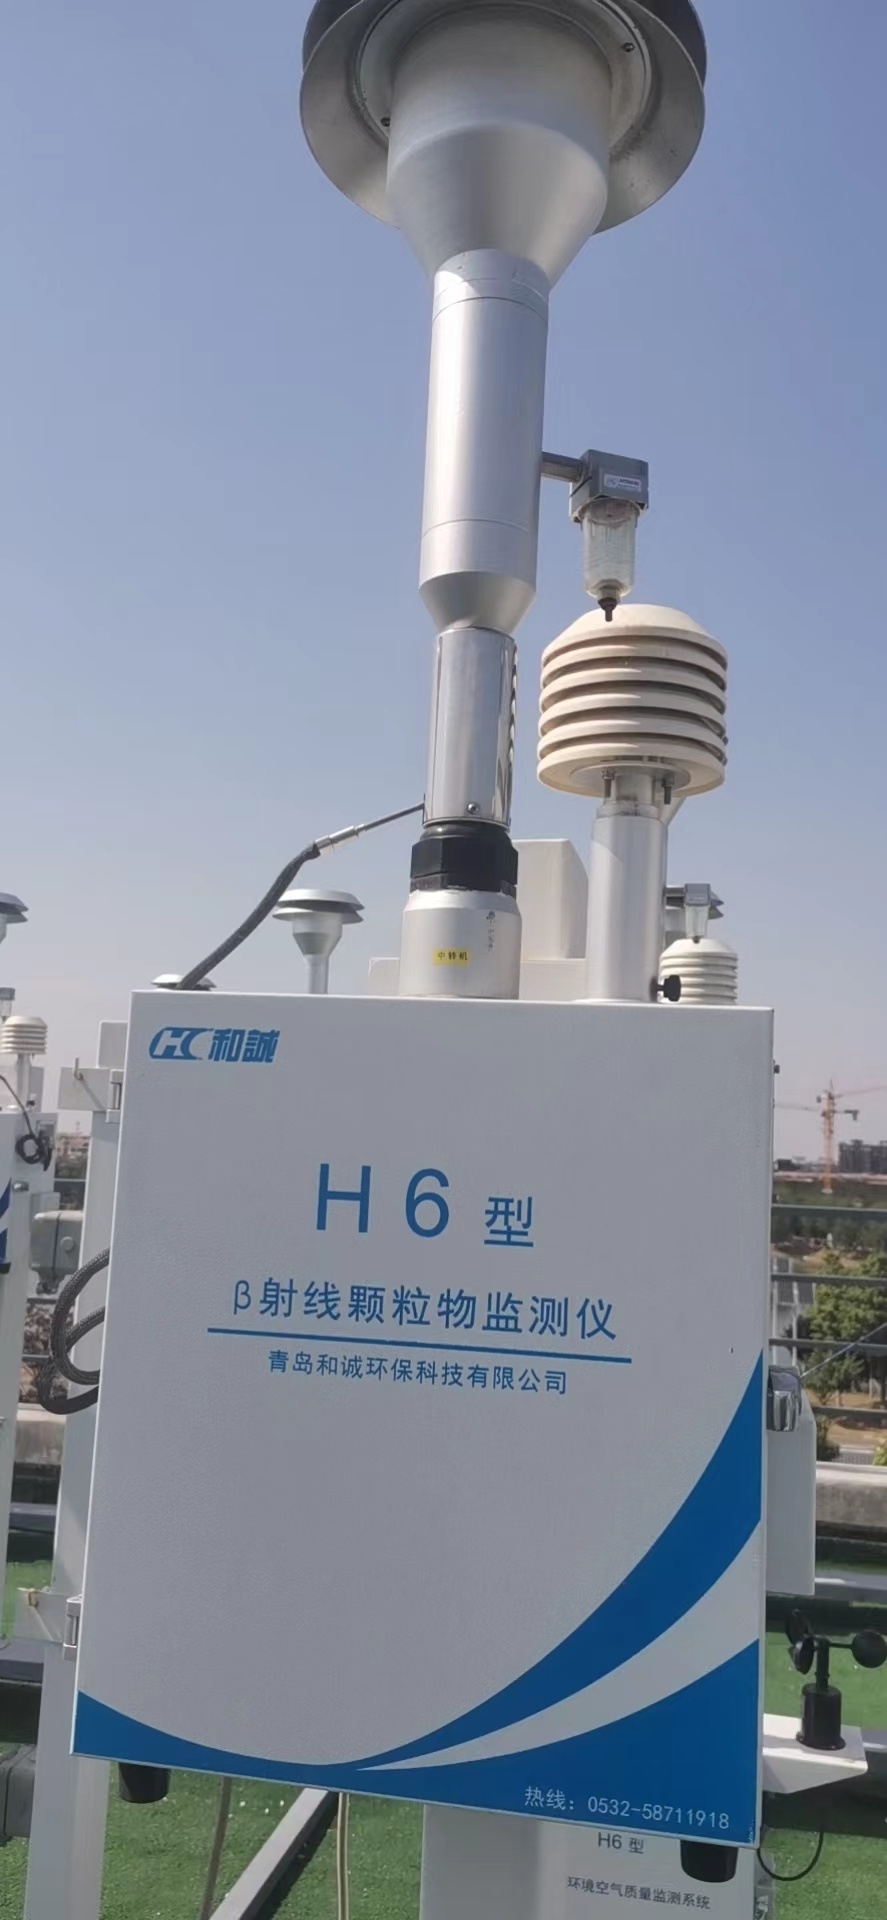 贝塔射线网格化管理在线空气质量扬尘噪声监测仪PM2.5